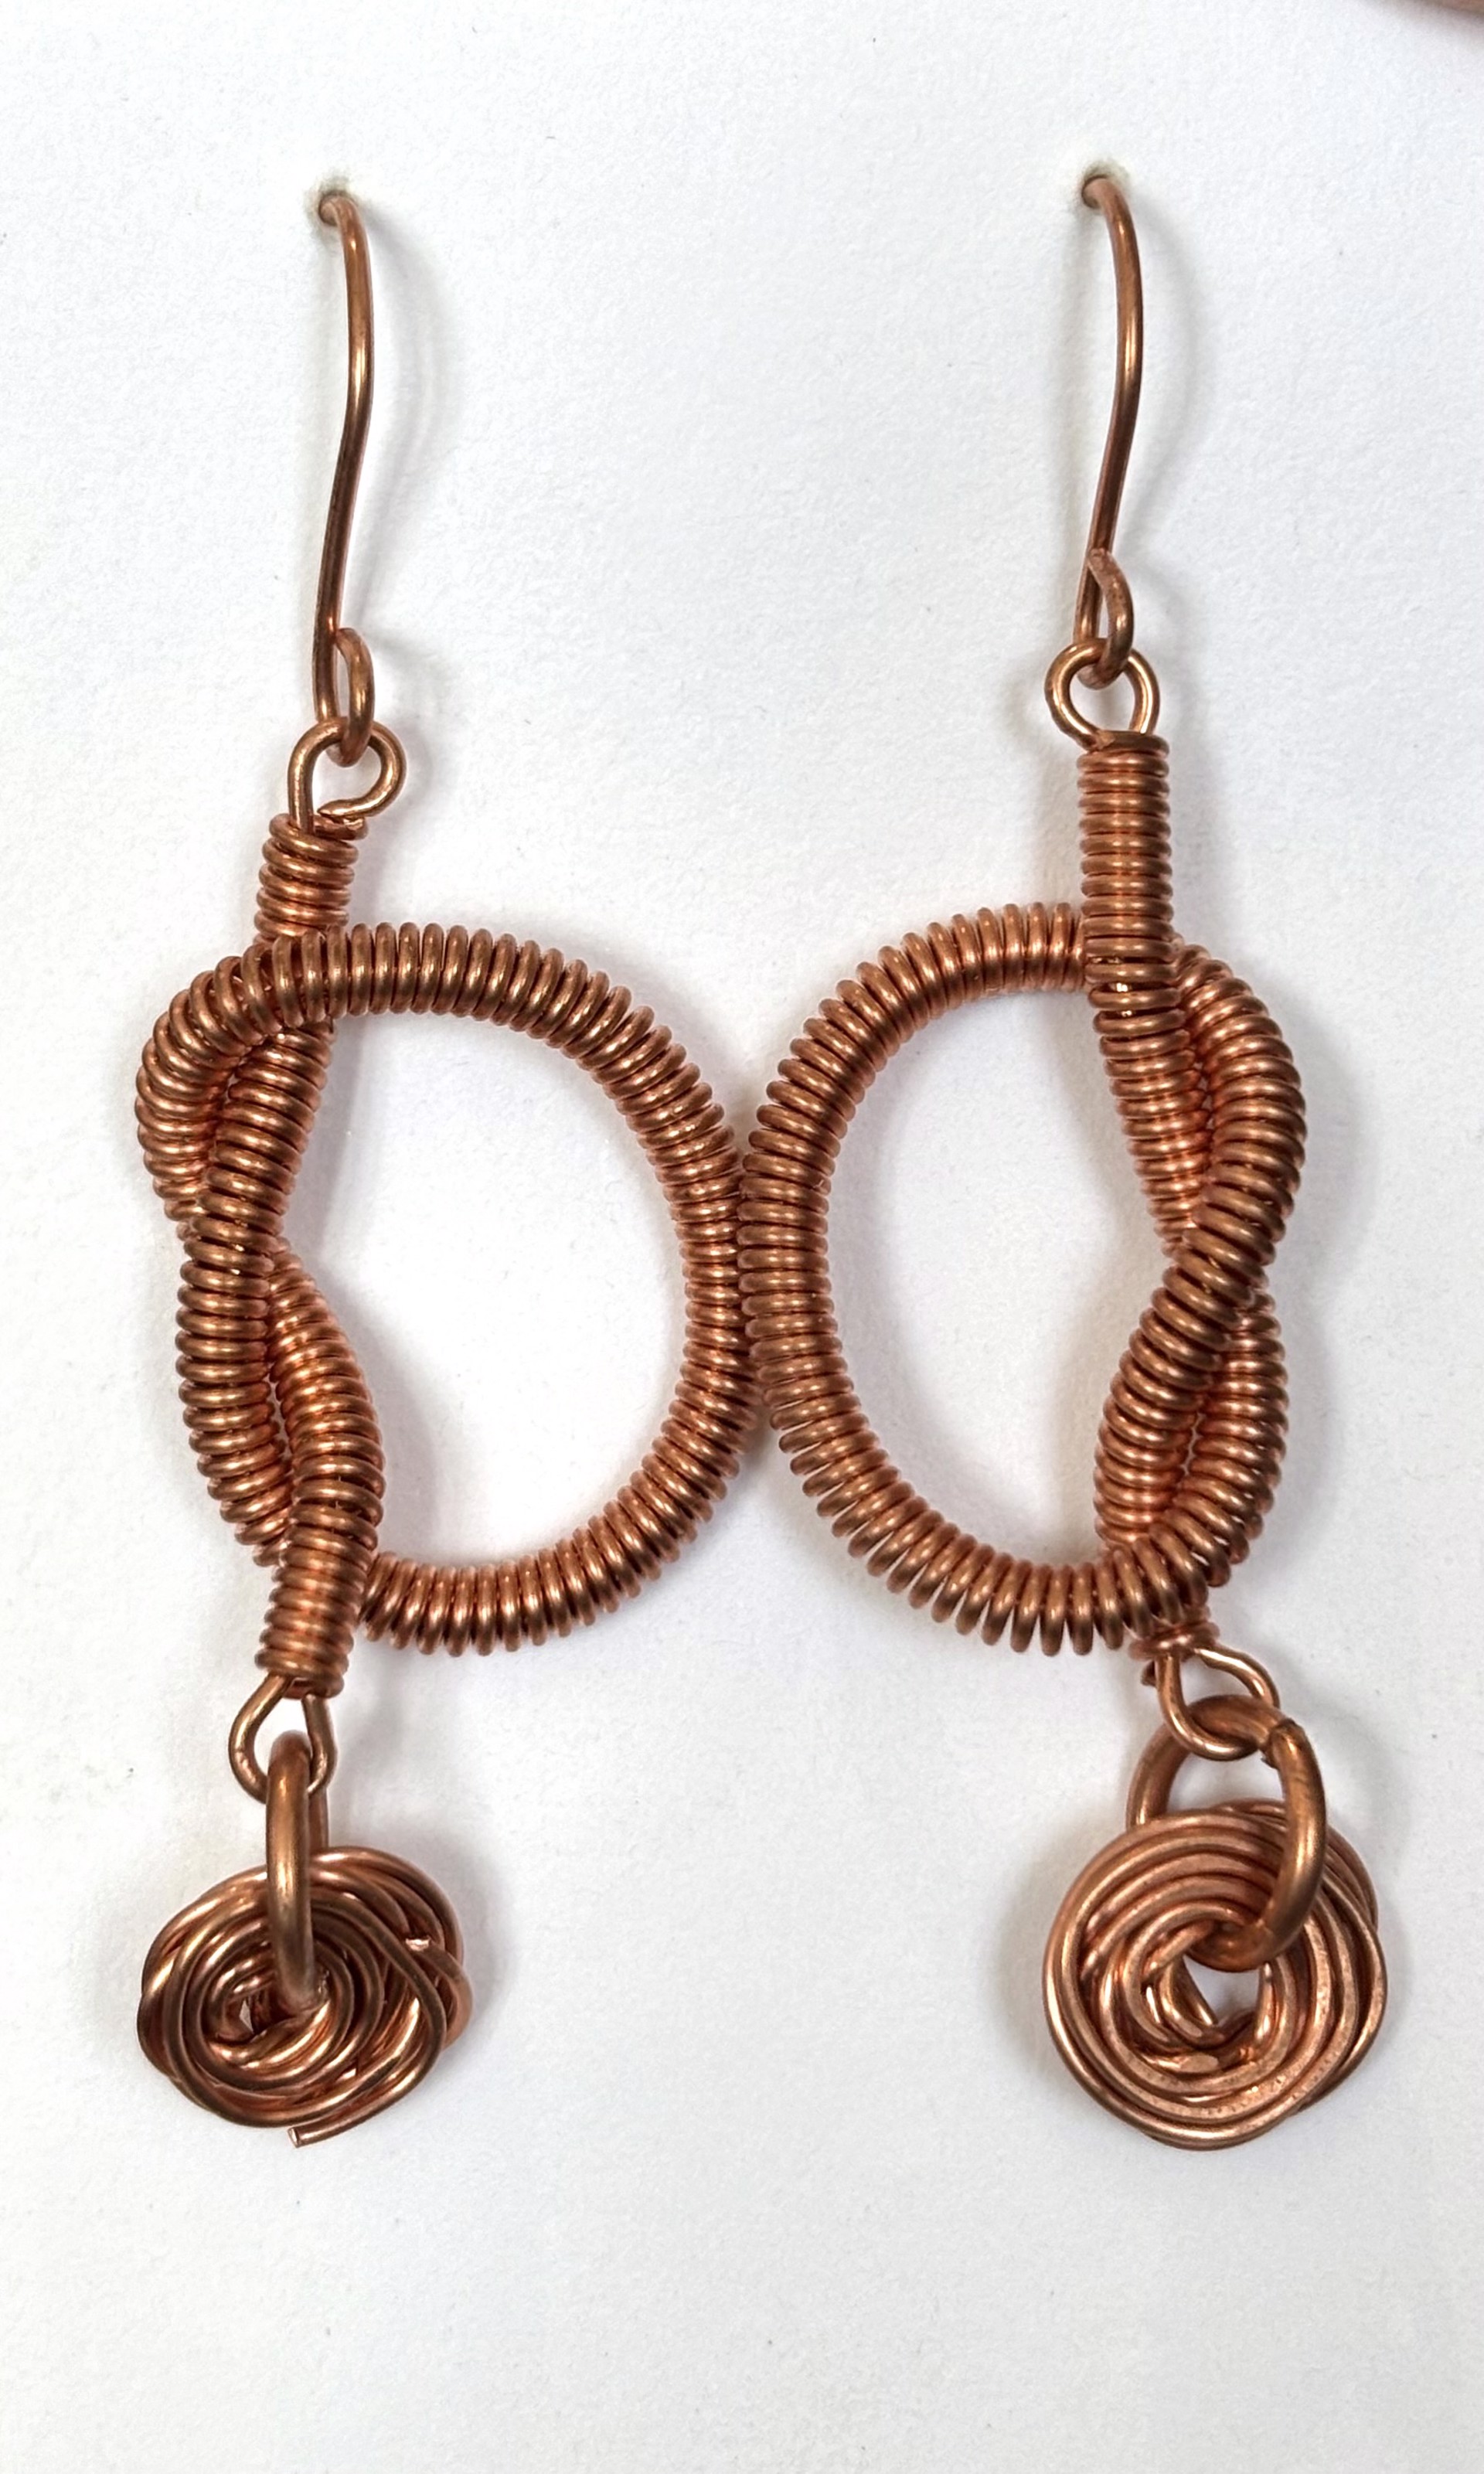 Copper Coil Knot Earrings by Emelie Hebert